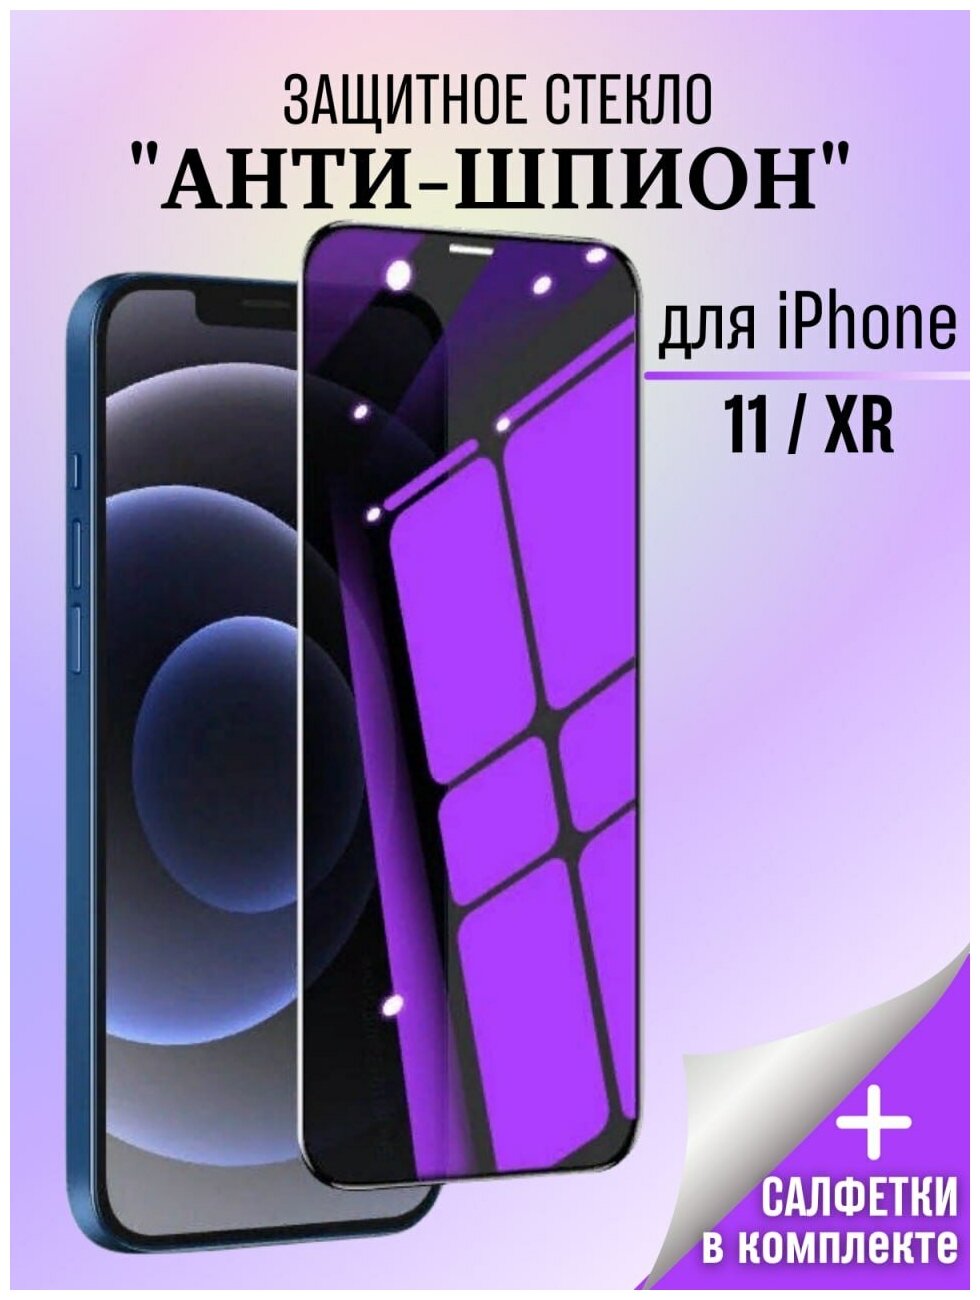 Защитное стекло Антишпион для iPhone 11 / Стекло антишпион / iPhone Xr / Стекло для iPhone 11 / XR